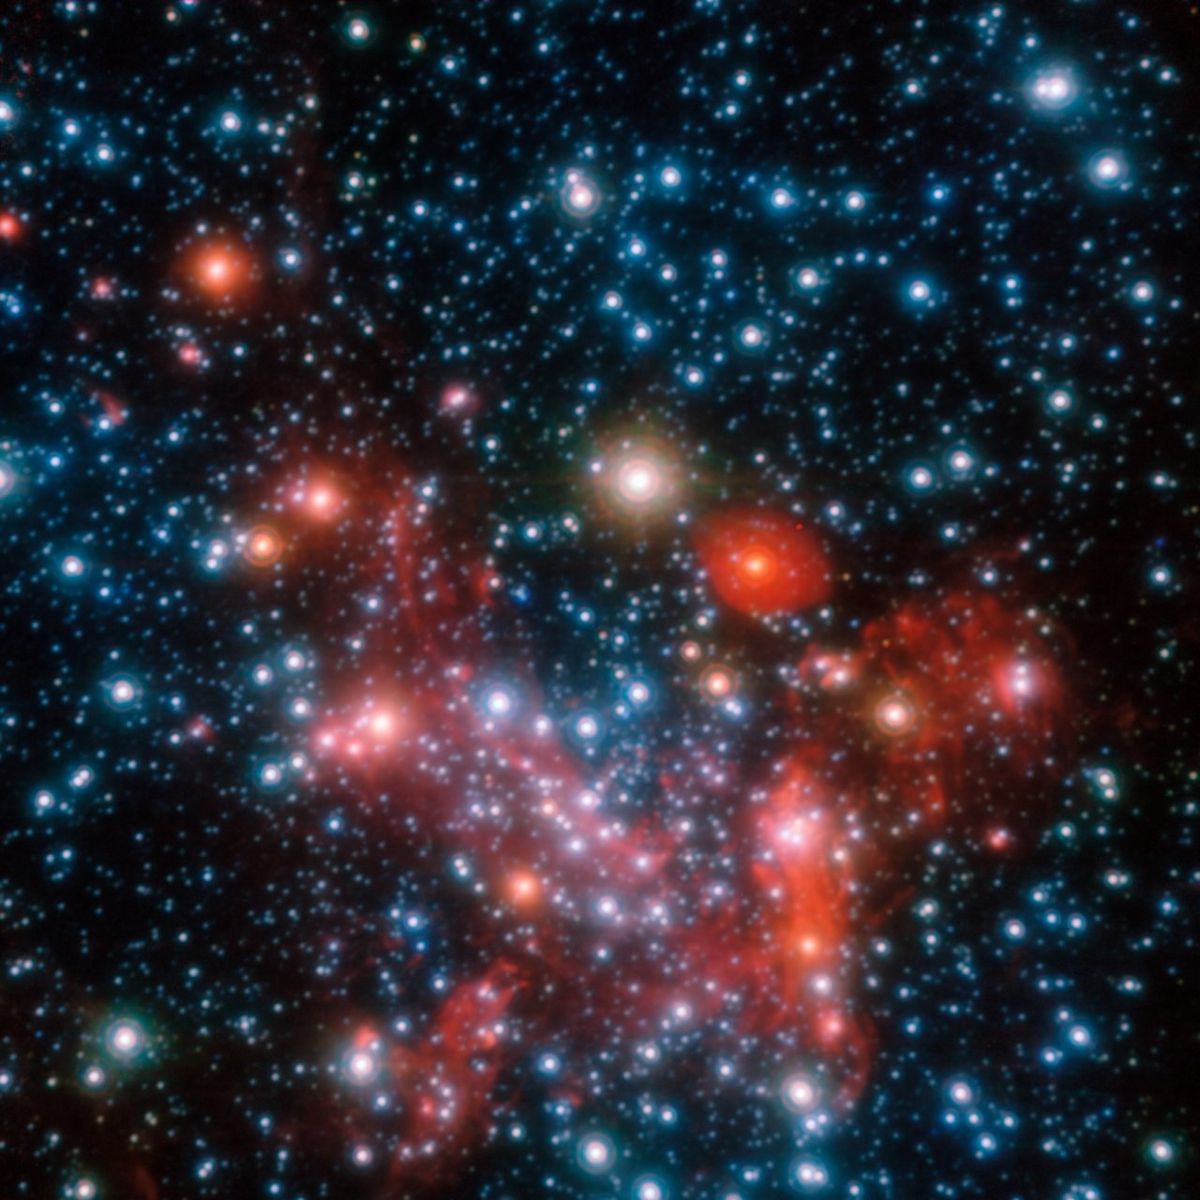 Snímek centrální části Mléčné dráhy, jak vypadá v oblasti blízké infračervenému záření. Sledováním pohybů centrálních hvězd za více než 16 let byli astronomové schopni určit hmotnost supermasivní černé díry, která se zde ukrývá.